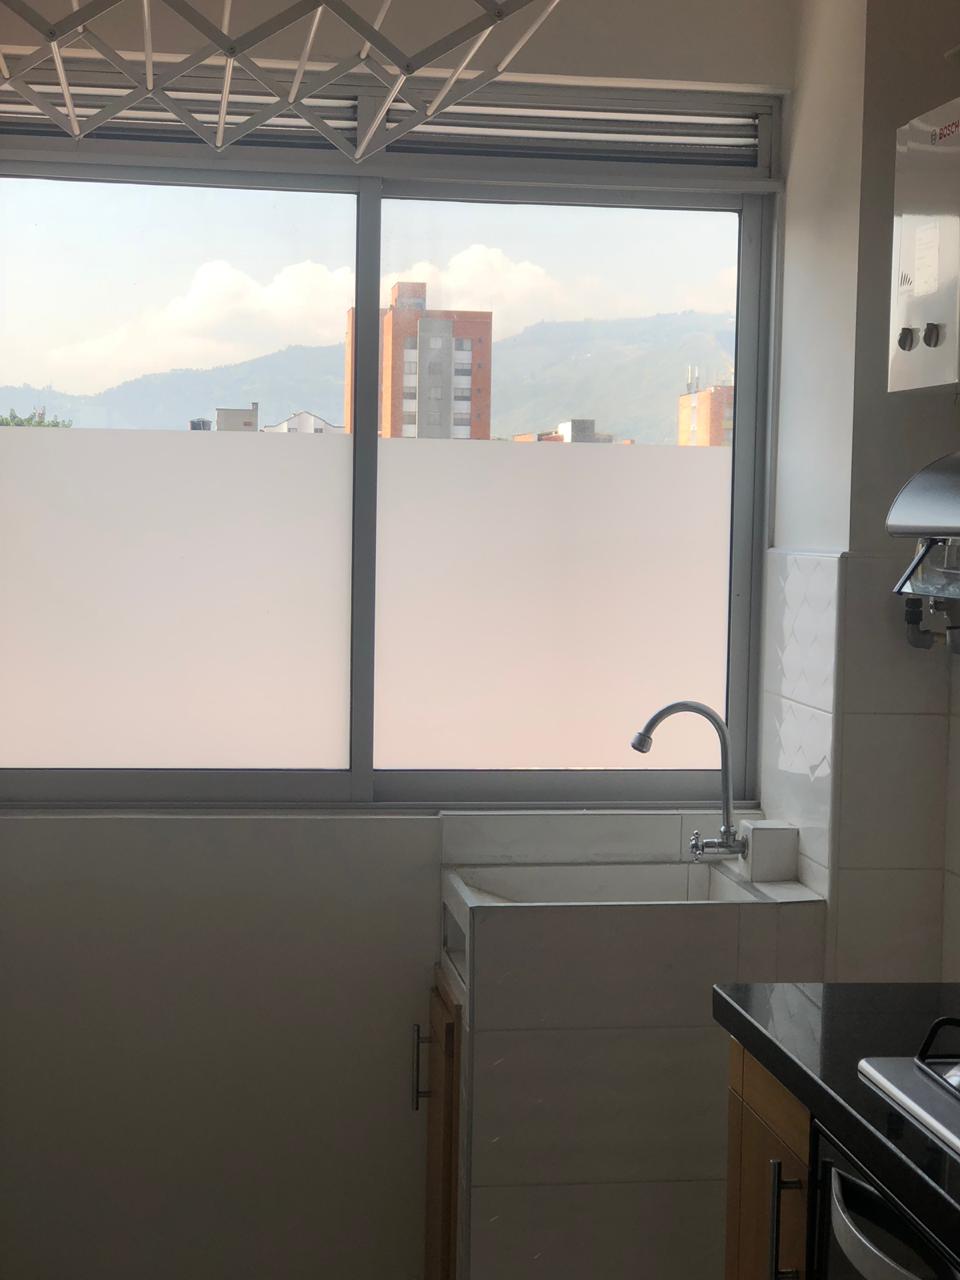 Imponente apartamento en venta San Joaquin-Medellin